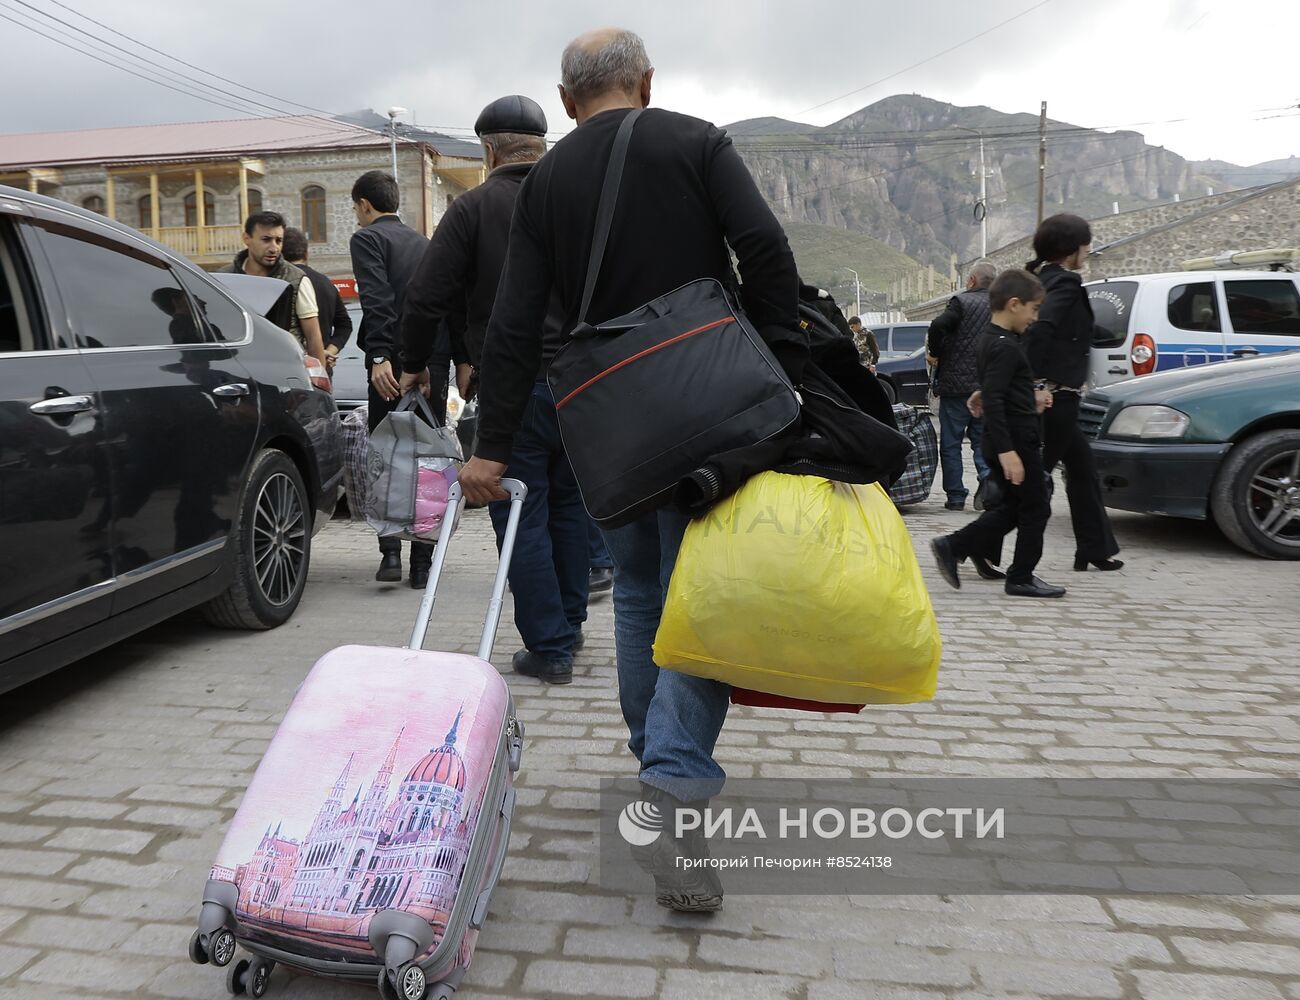 85 ألف شخص يغادرون إقليم قره باغ إلى أرمينيا